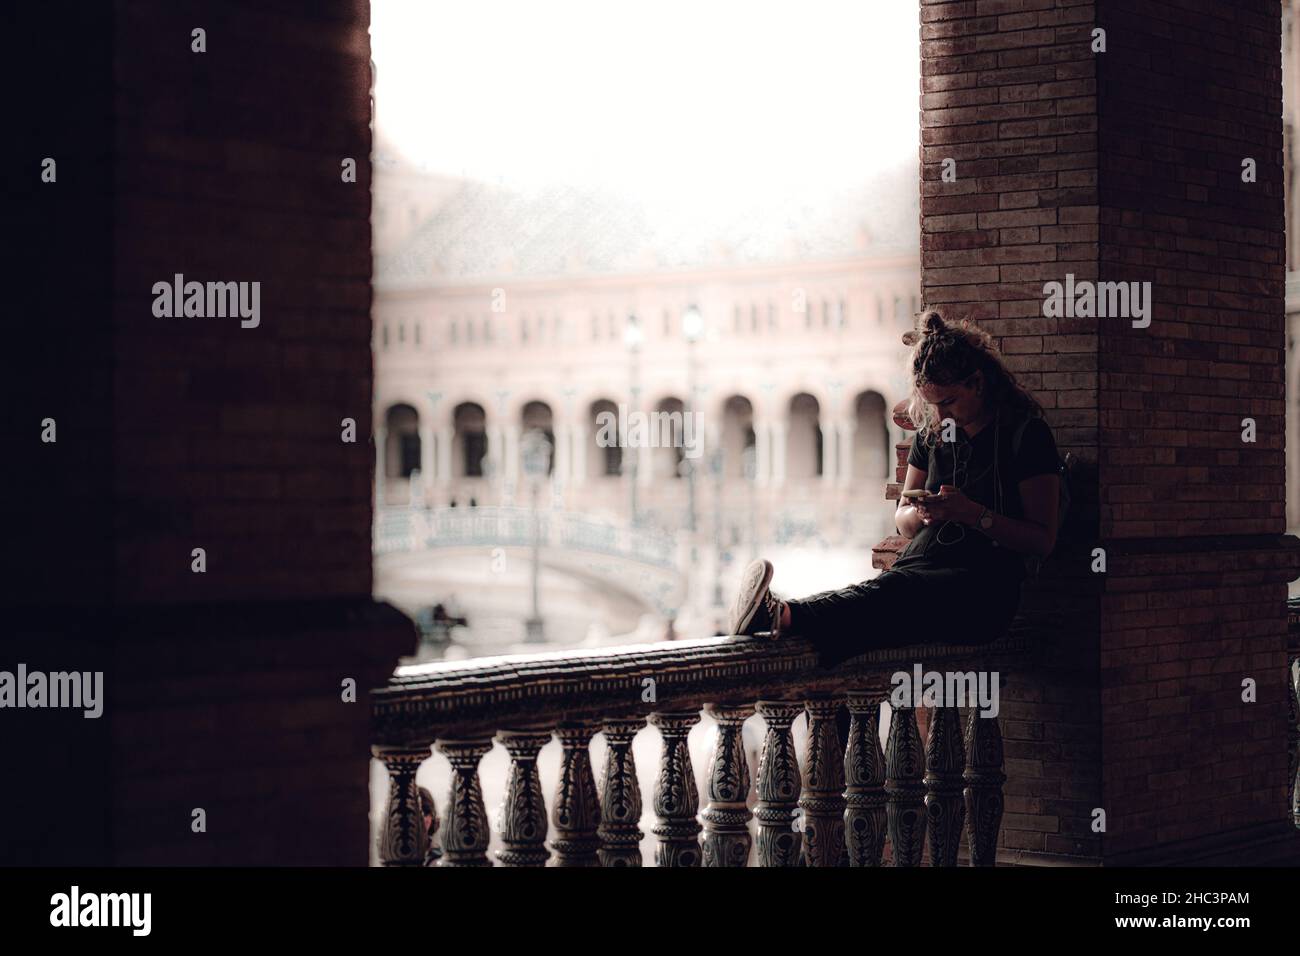 Junge Frau, die auf einem Steinzaun des Gebäudes sitzt und am Telefon tippt Stockfoto